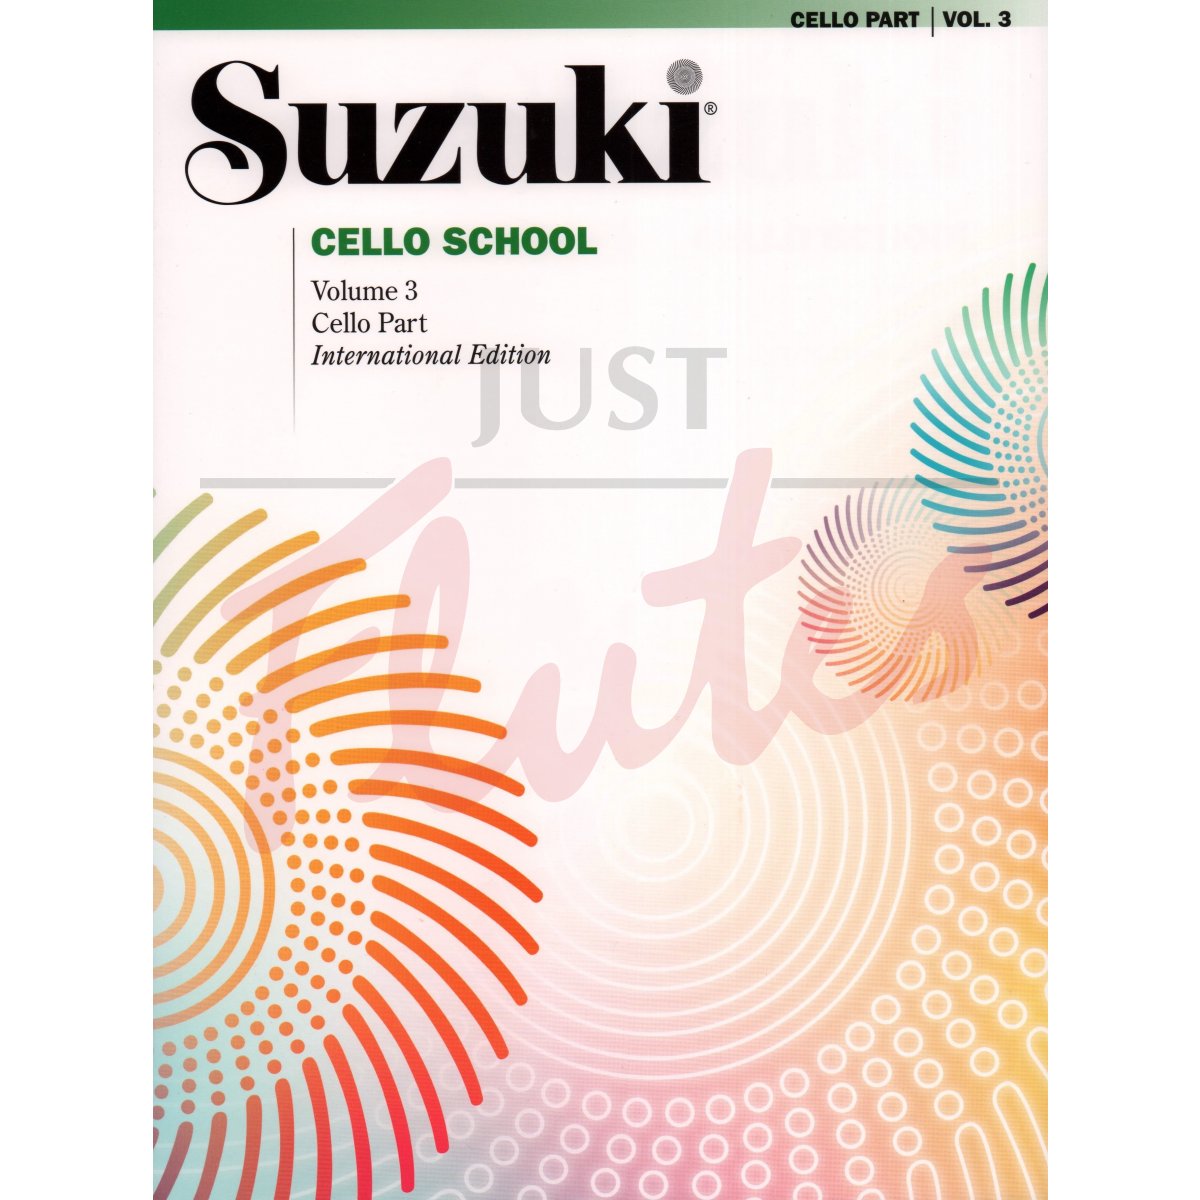 Suzuki Cello School Vol. 3 [Cello Part]